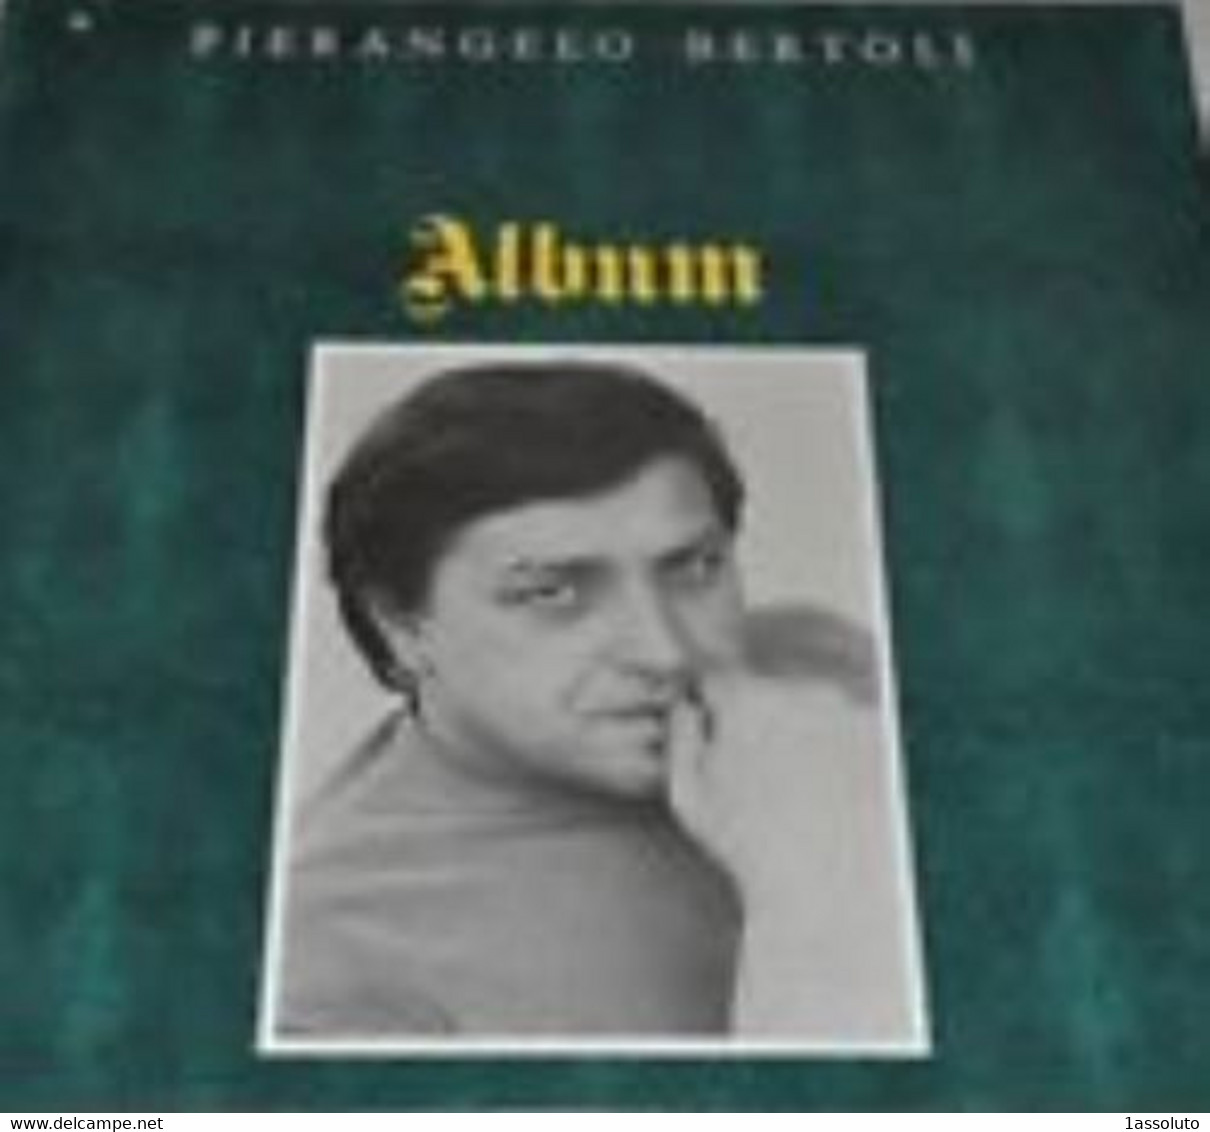 PIERANGELO BERTOLI - Album - - Sonstige - Italienische Musik